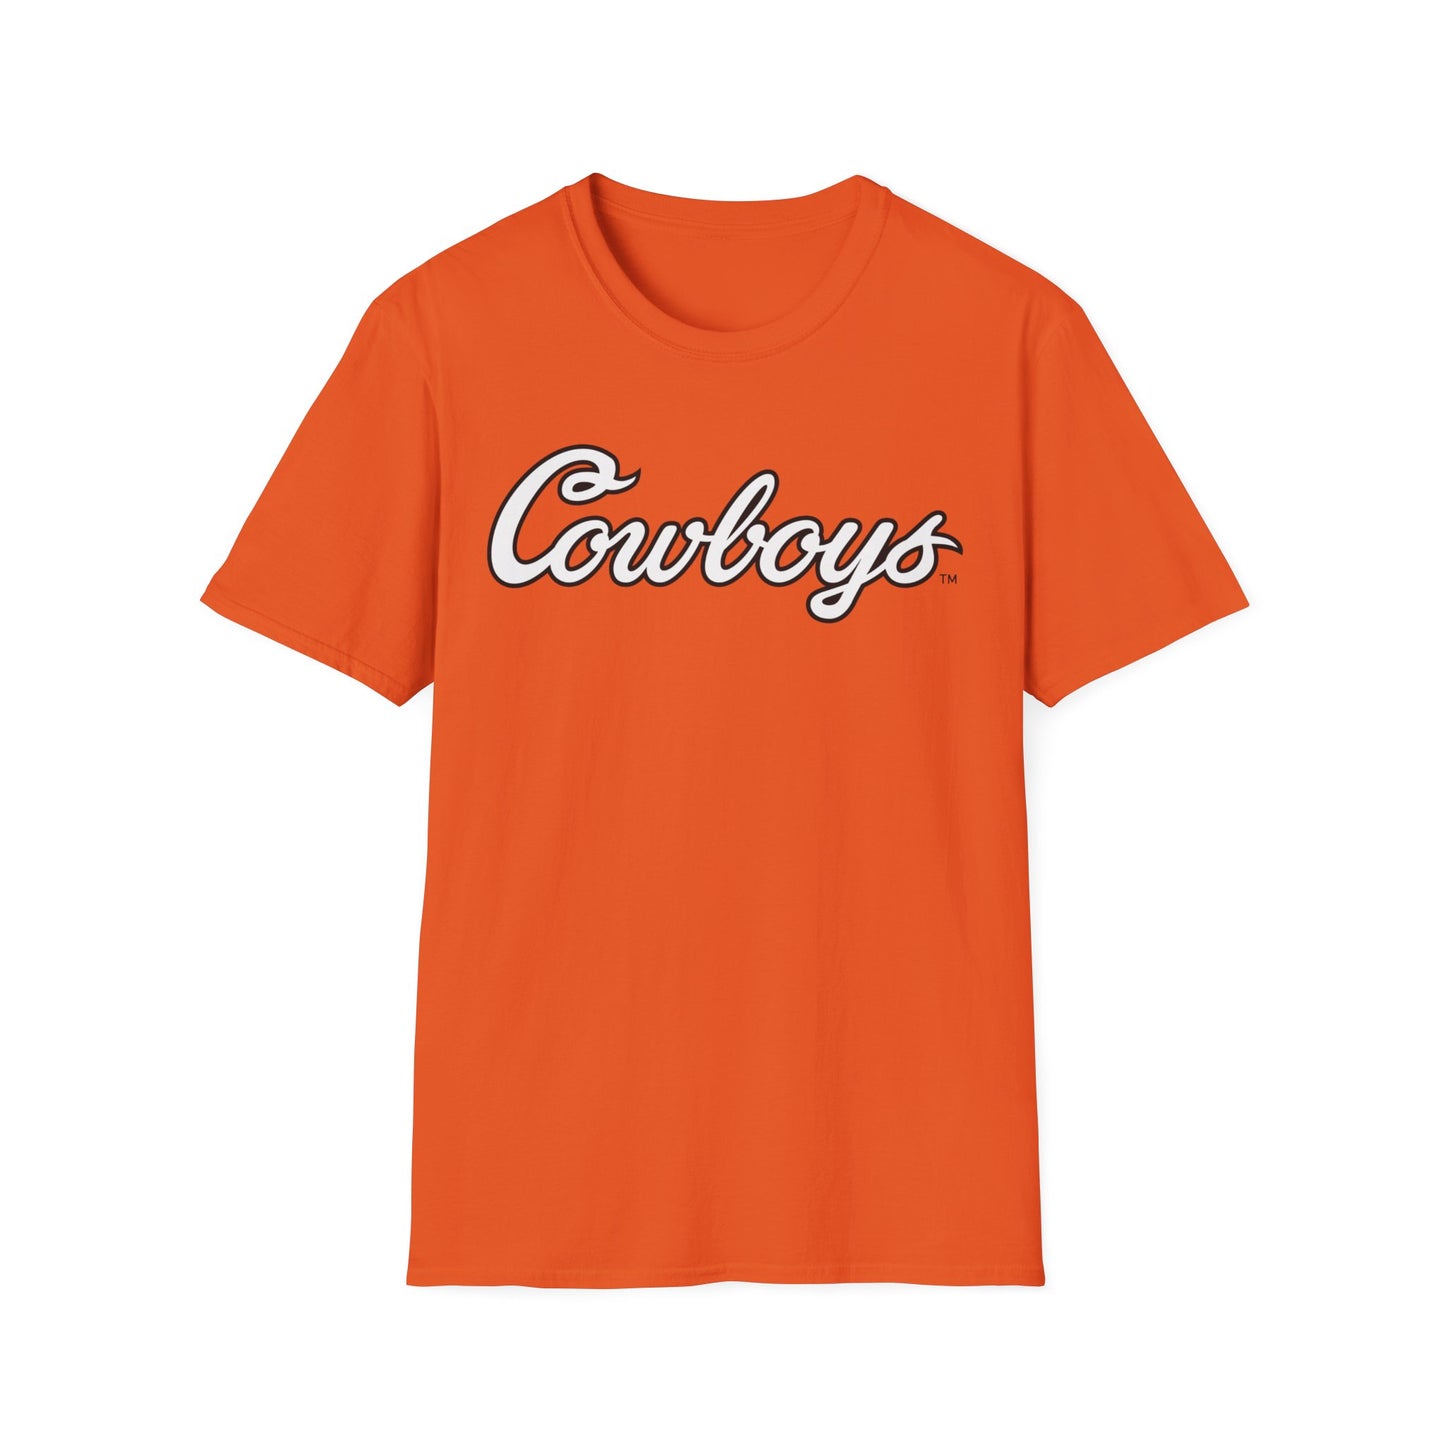 Hilton Marsh #65 Orange Cursive Cowboys T-Shirt